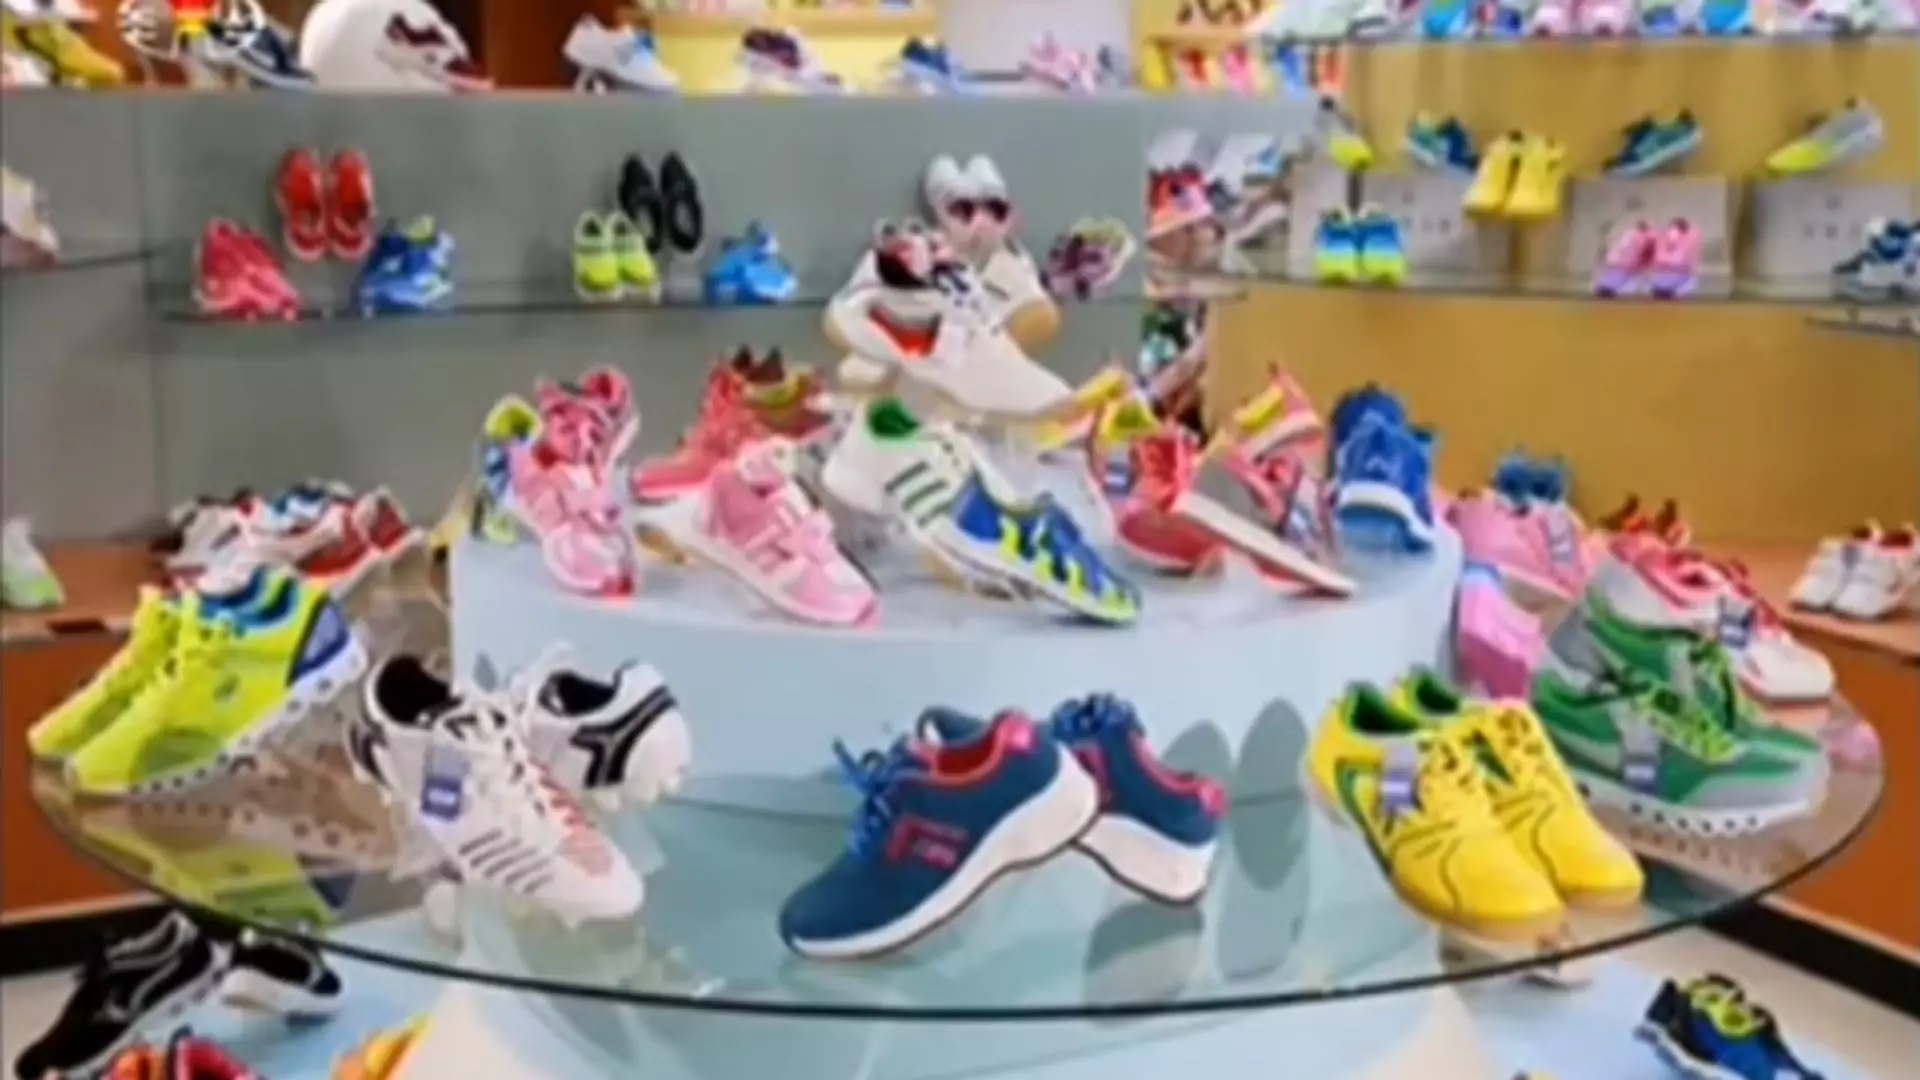 Kim Dzong Un chwali się fabryką z podróbami adidasa